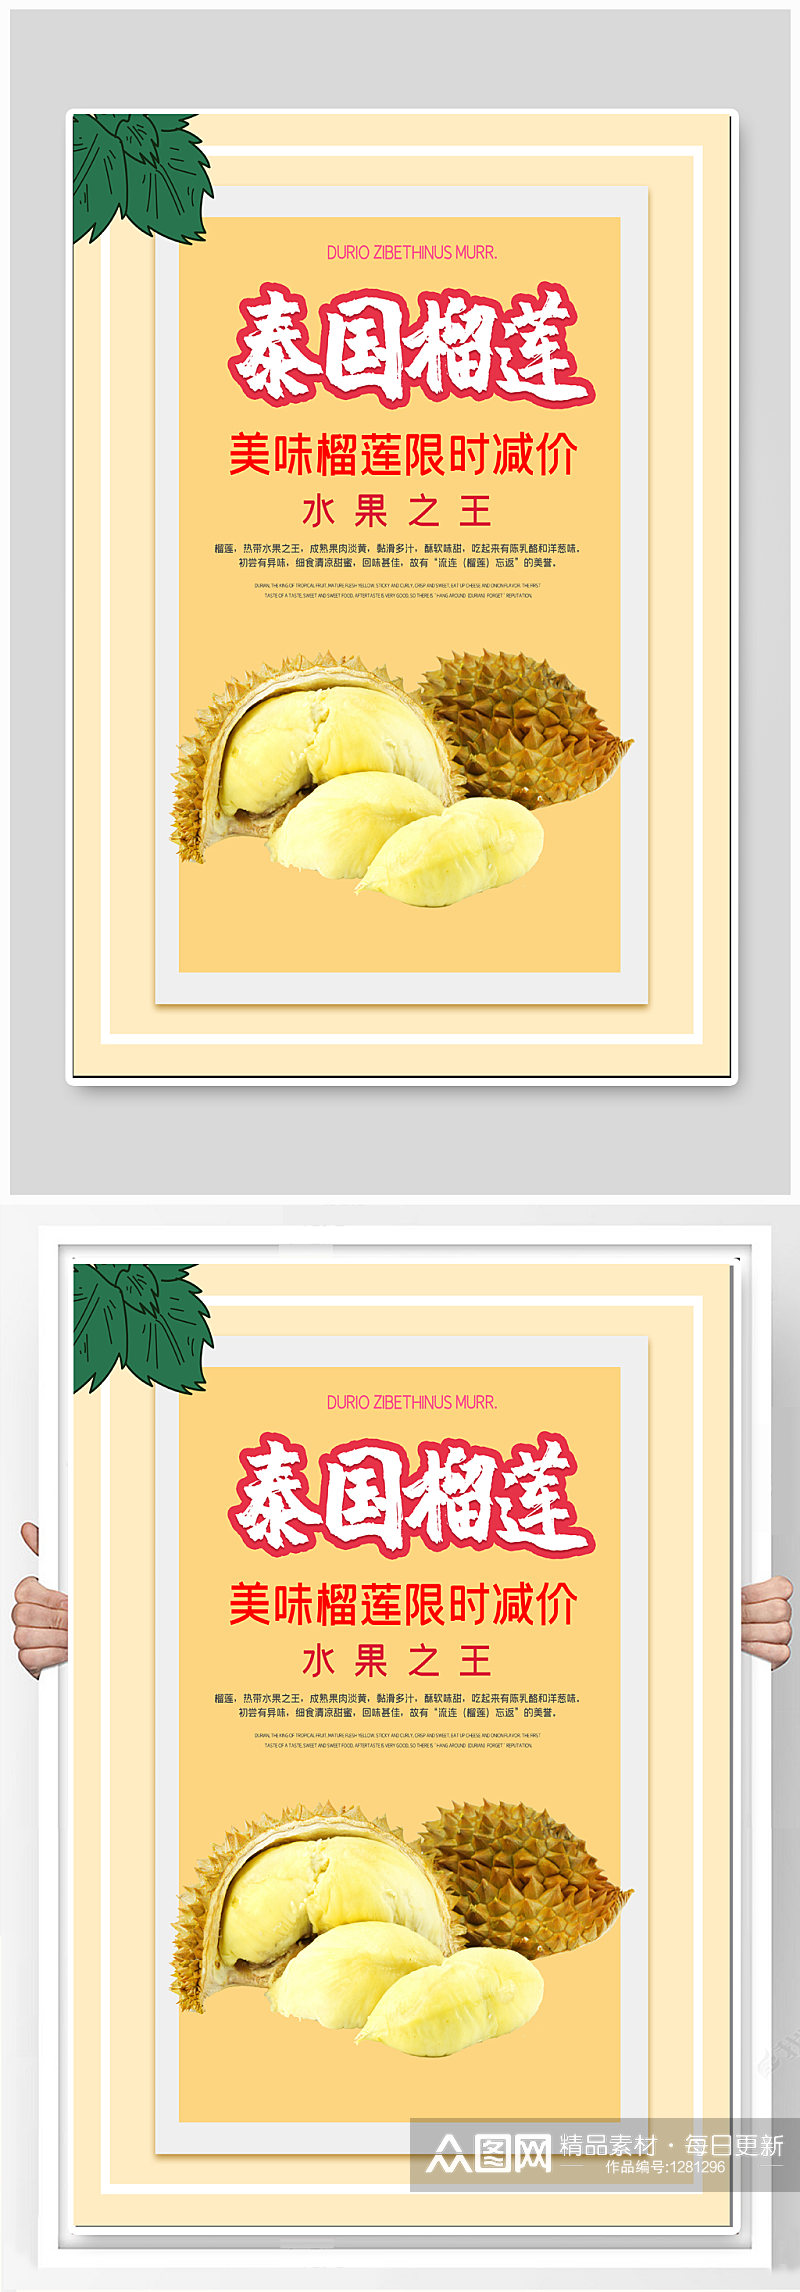 泰国榴莲水果宣传海报素材